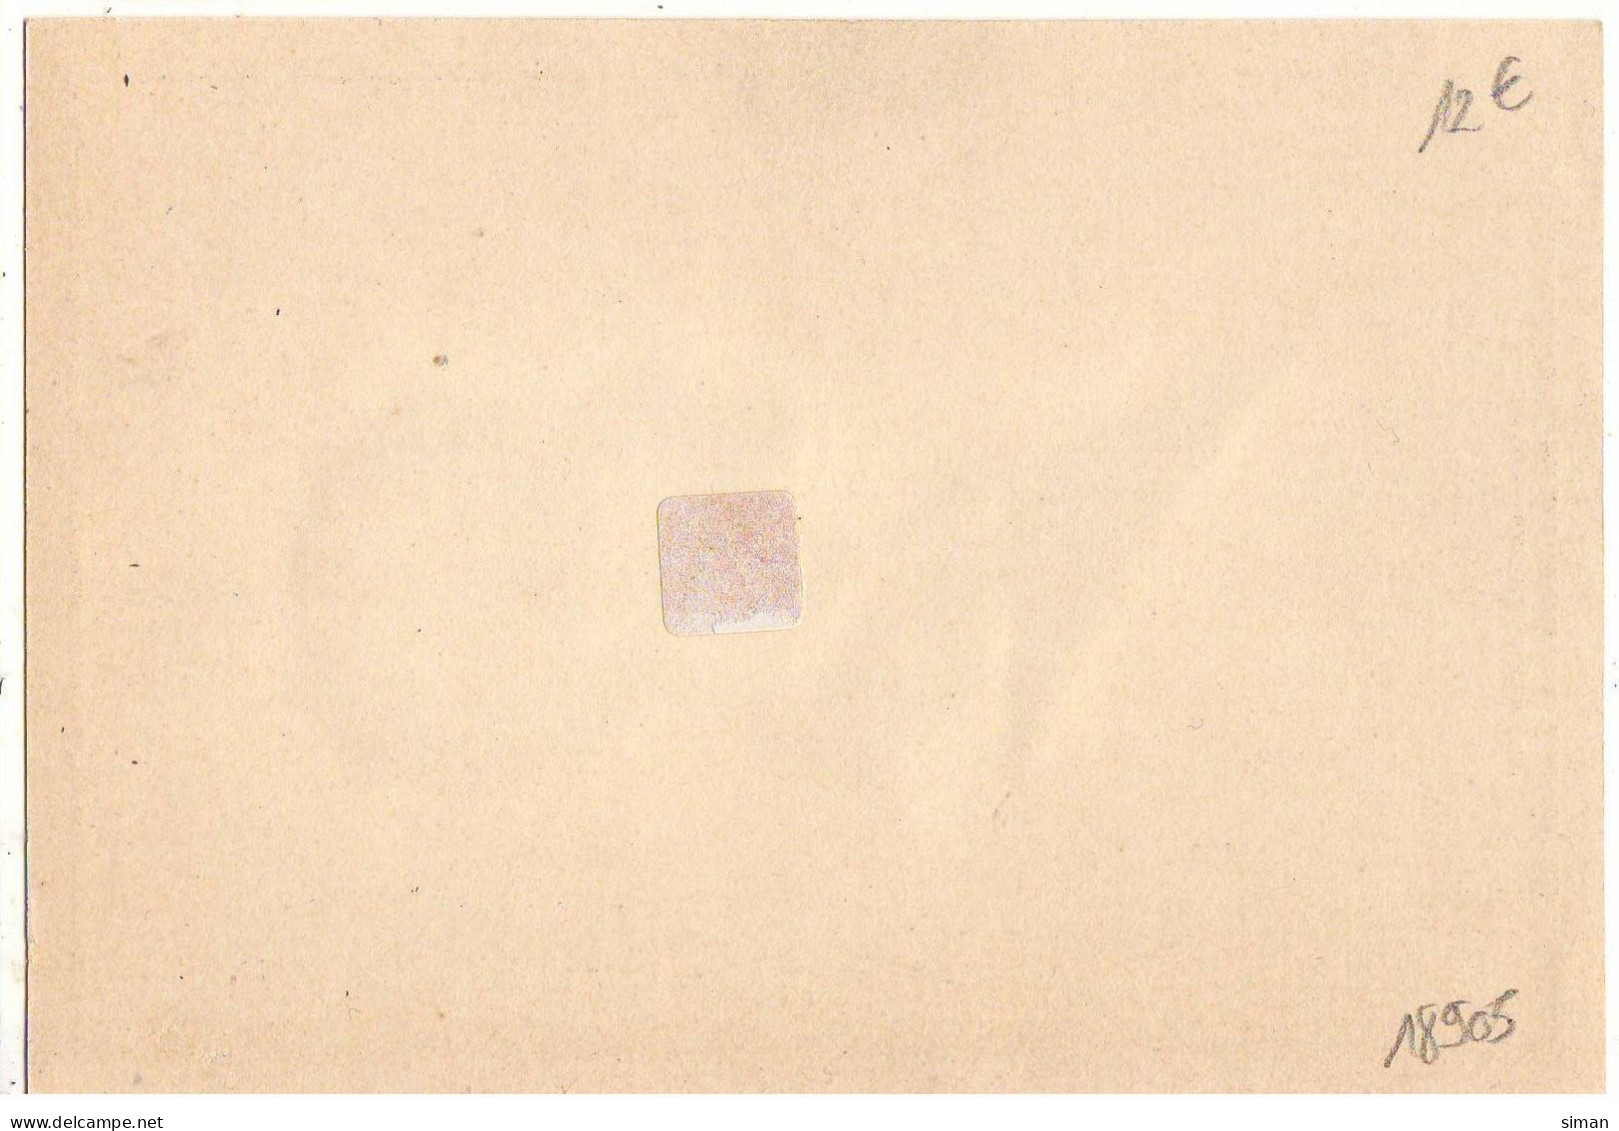 N°18905 - Silhouettes - P. Kârolyi Silhouette - Souvenir De L'Exposition Universelle De Bruxelles 1935 - Scherenschnitt - Silhouette